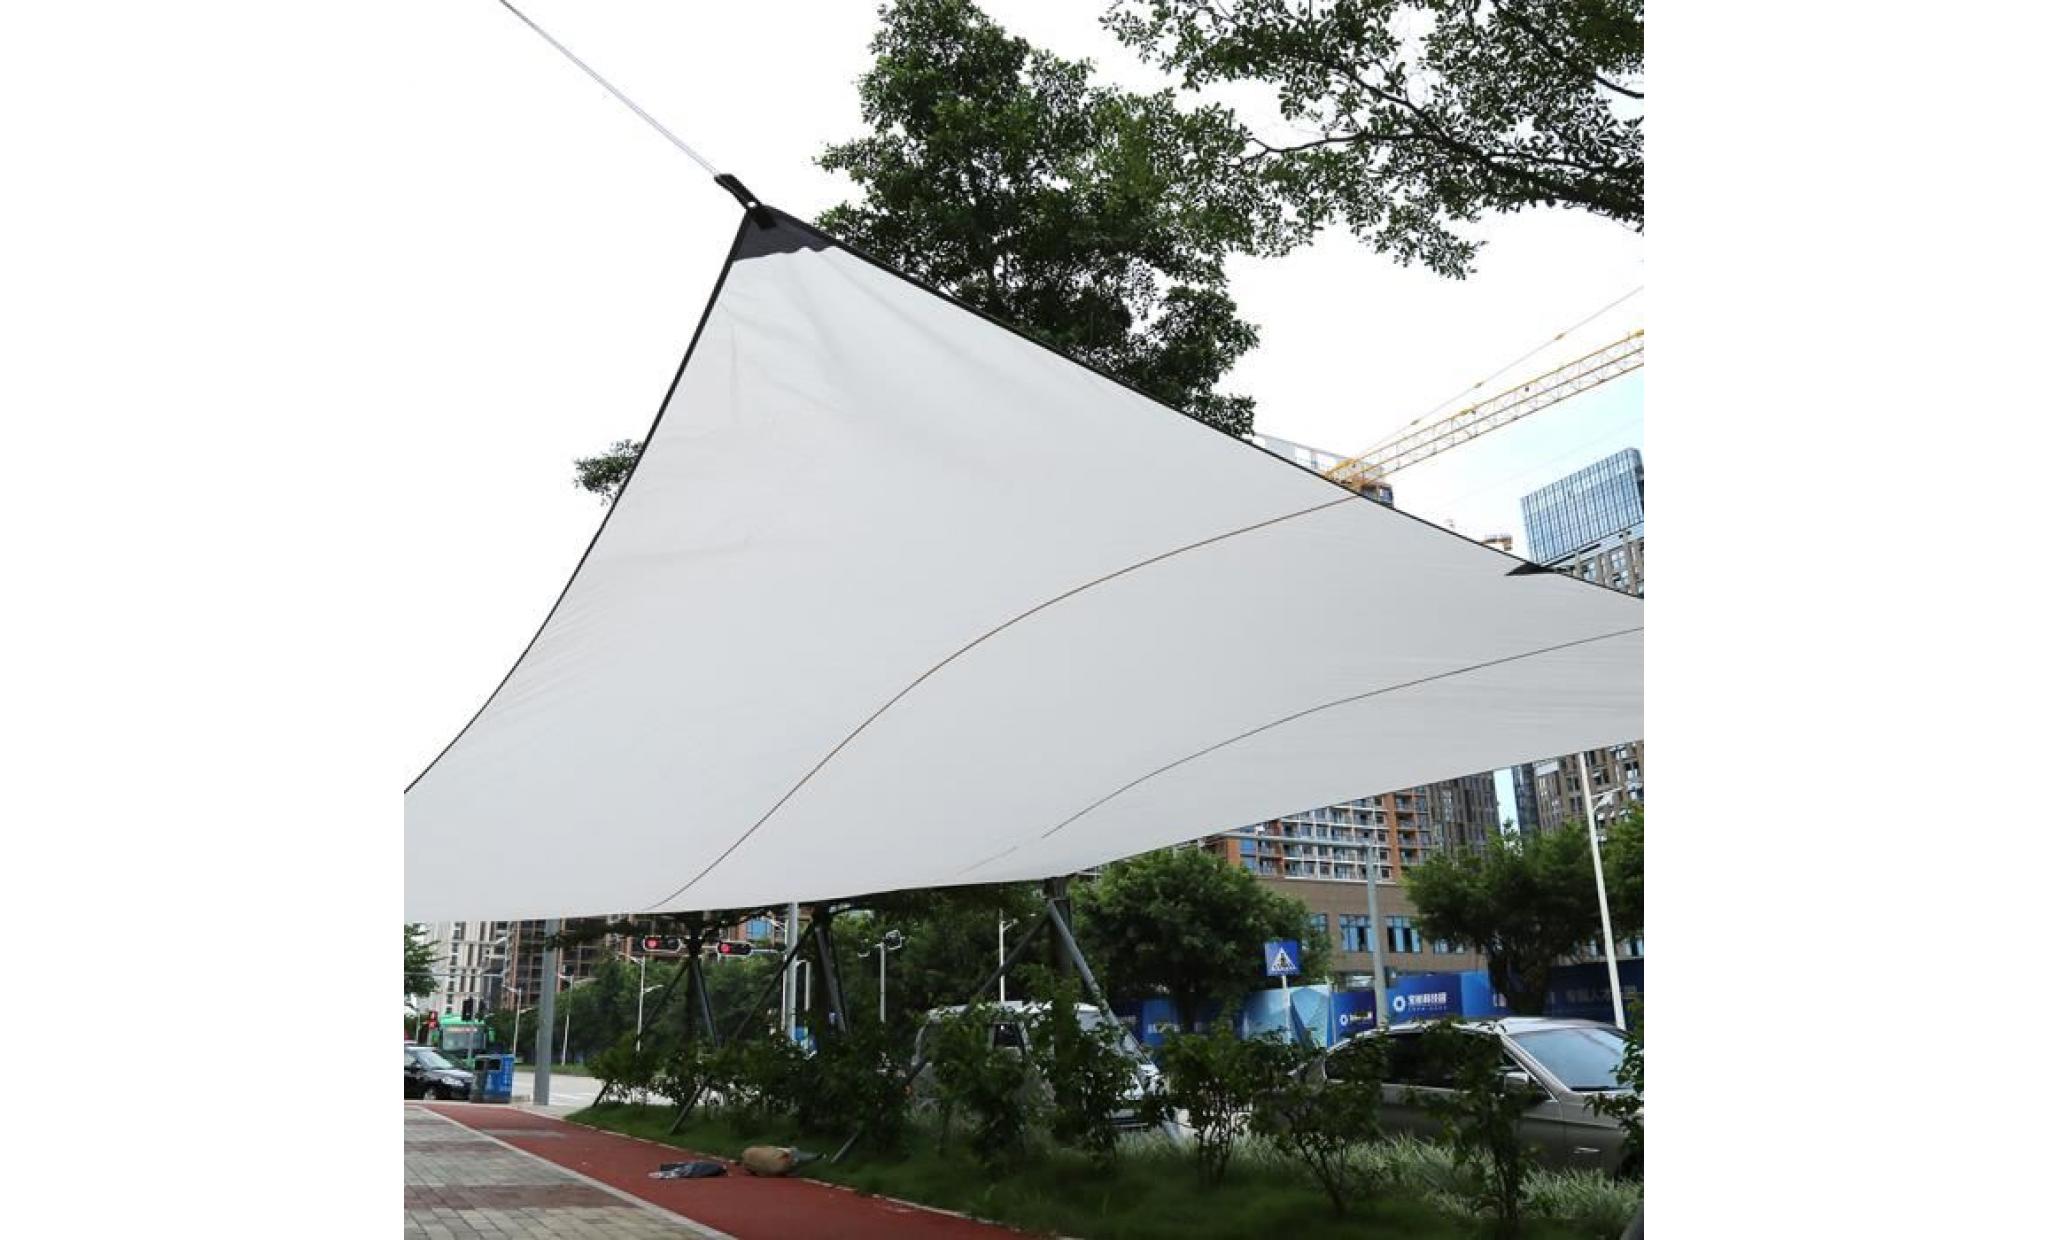 4.5 * 5 m toile solaire, voile d'ombrage, auvent de jardin étanche brise vue beige  yuyuan shop pas cher